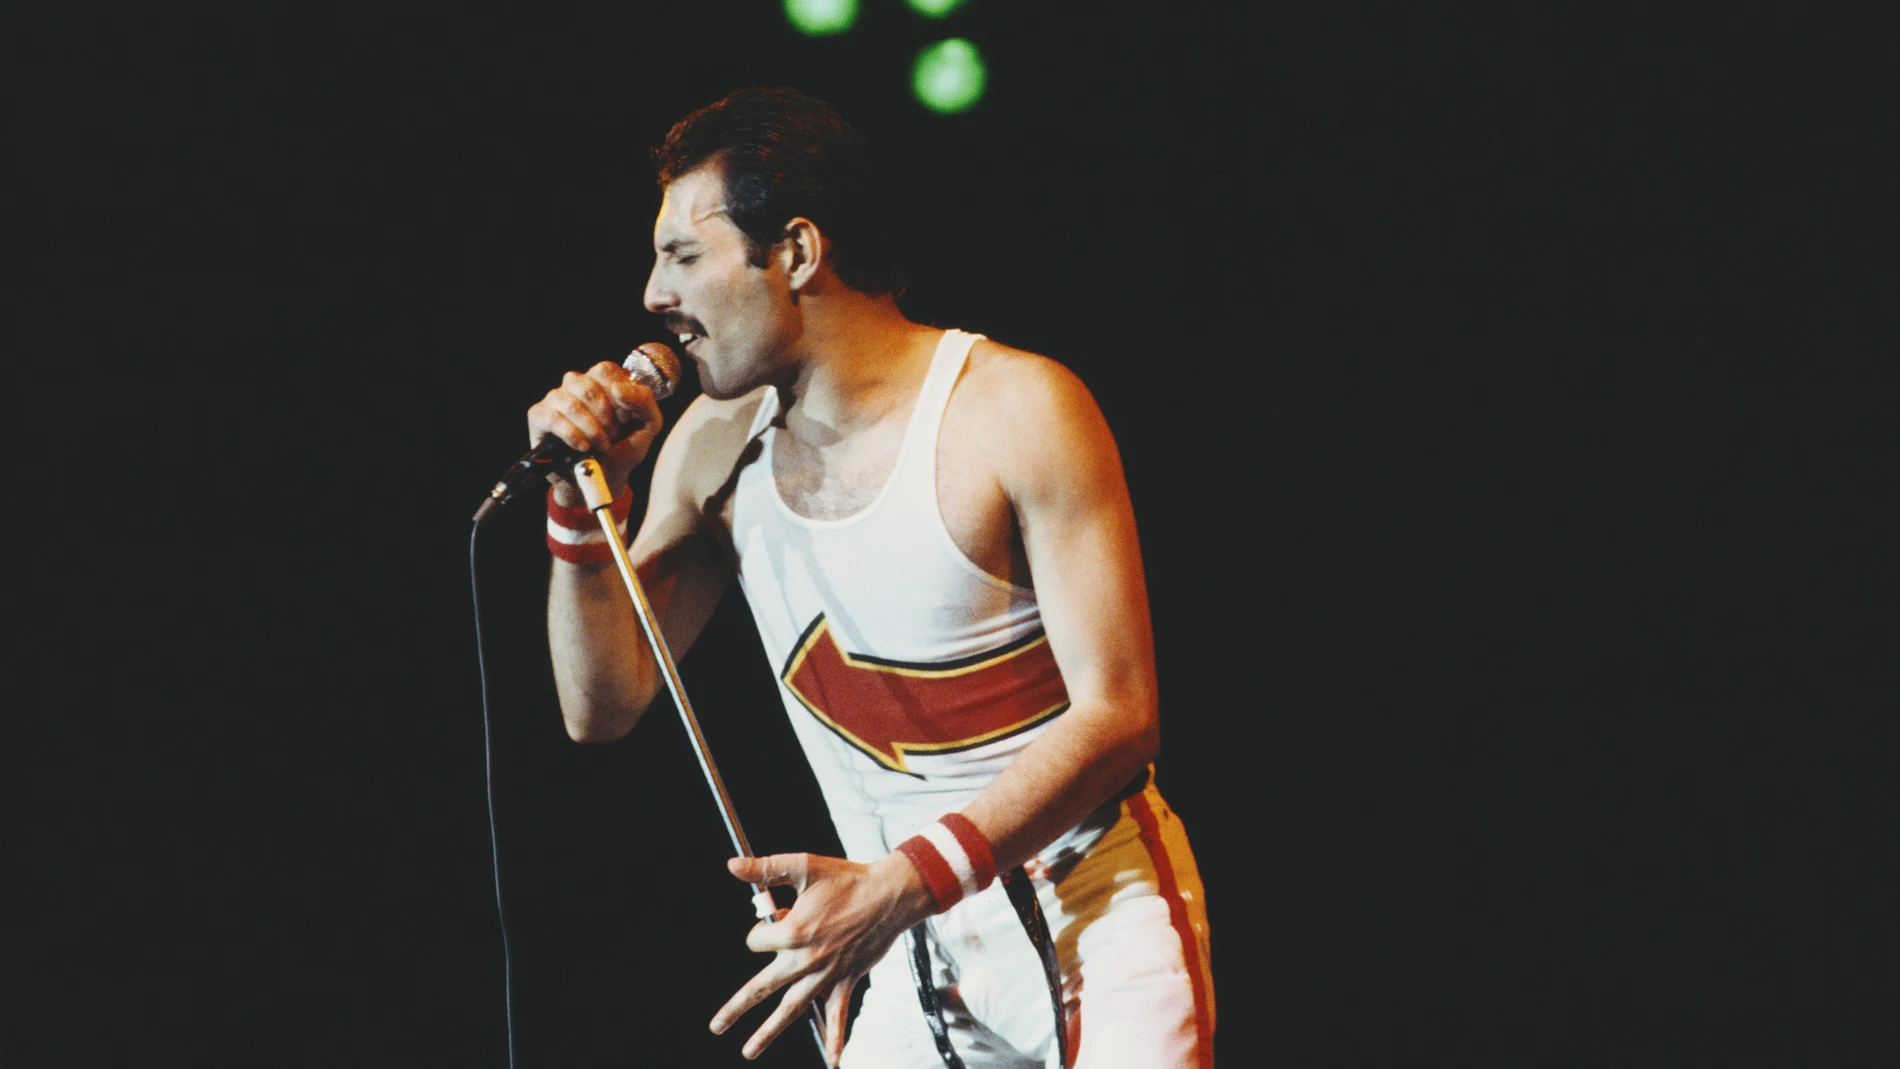 Hoy hace 30 años Freddie Mercury anunciaba que tenía VIH